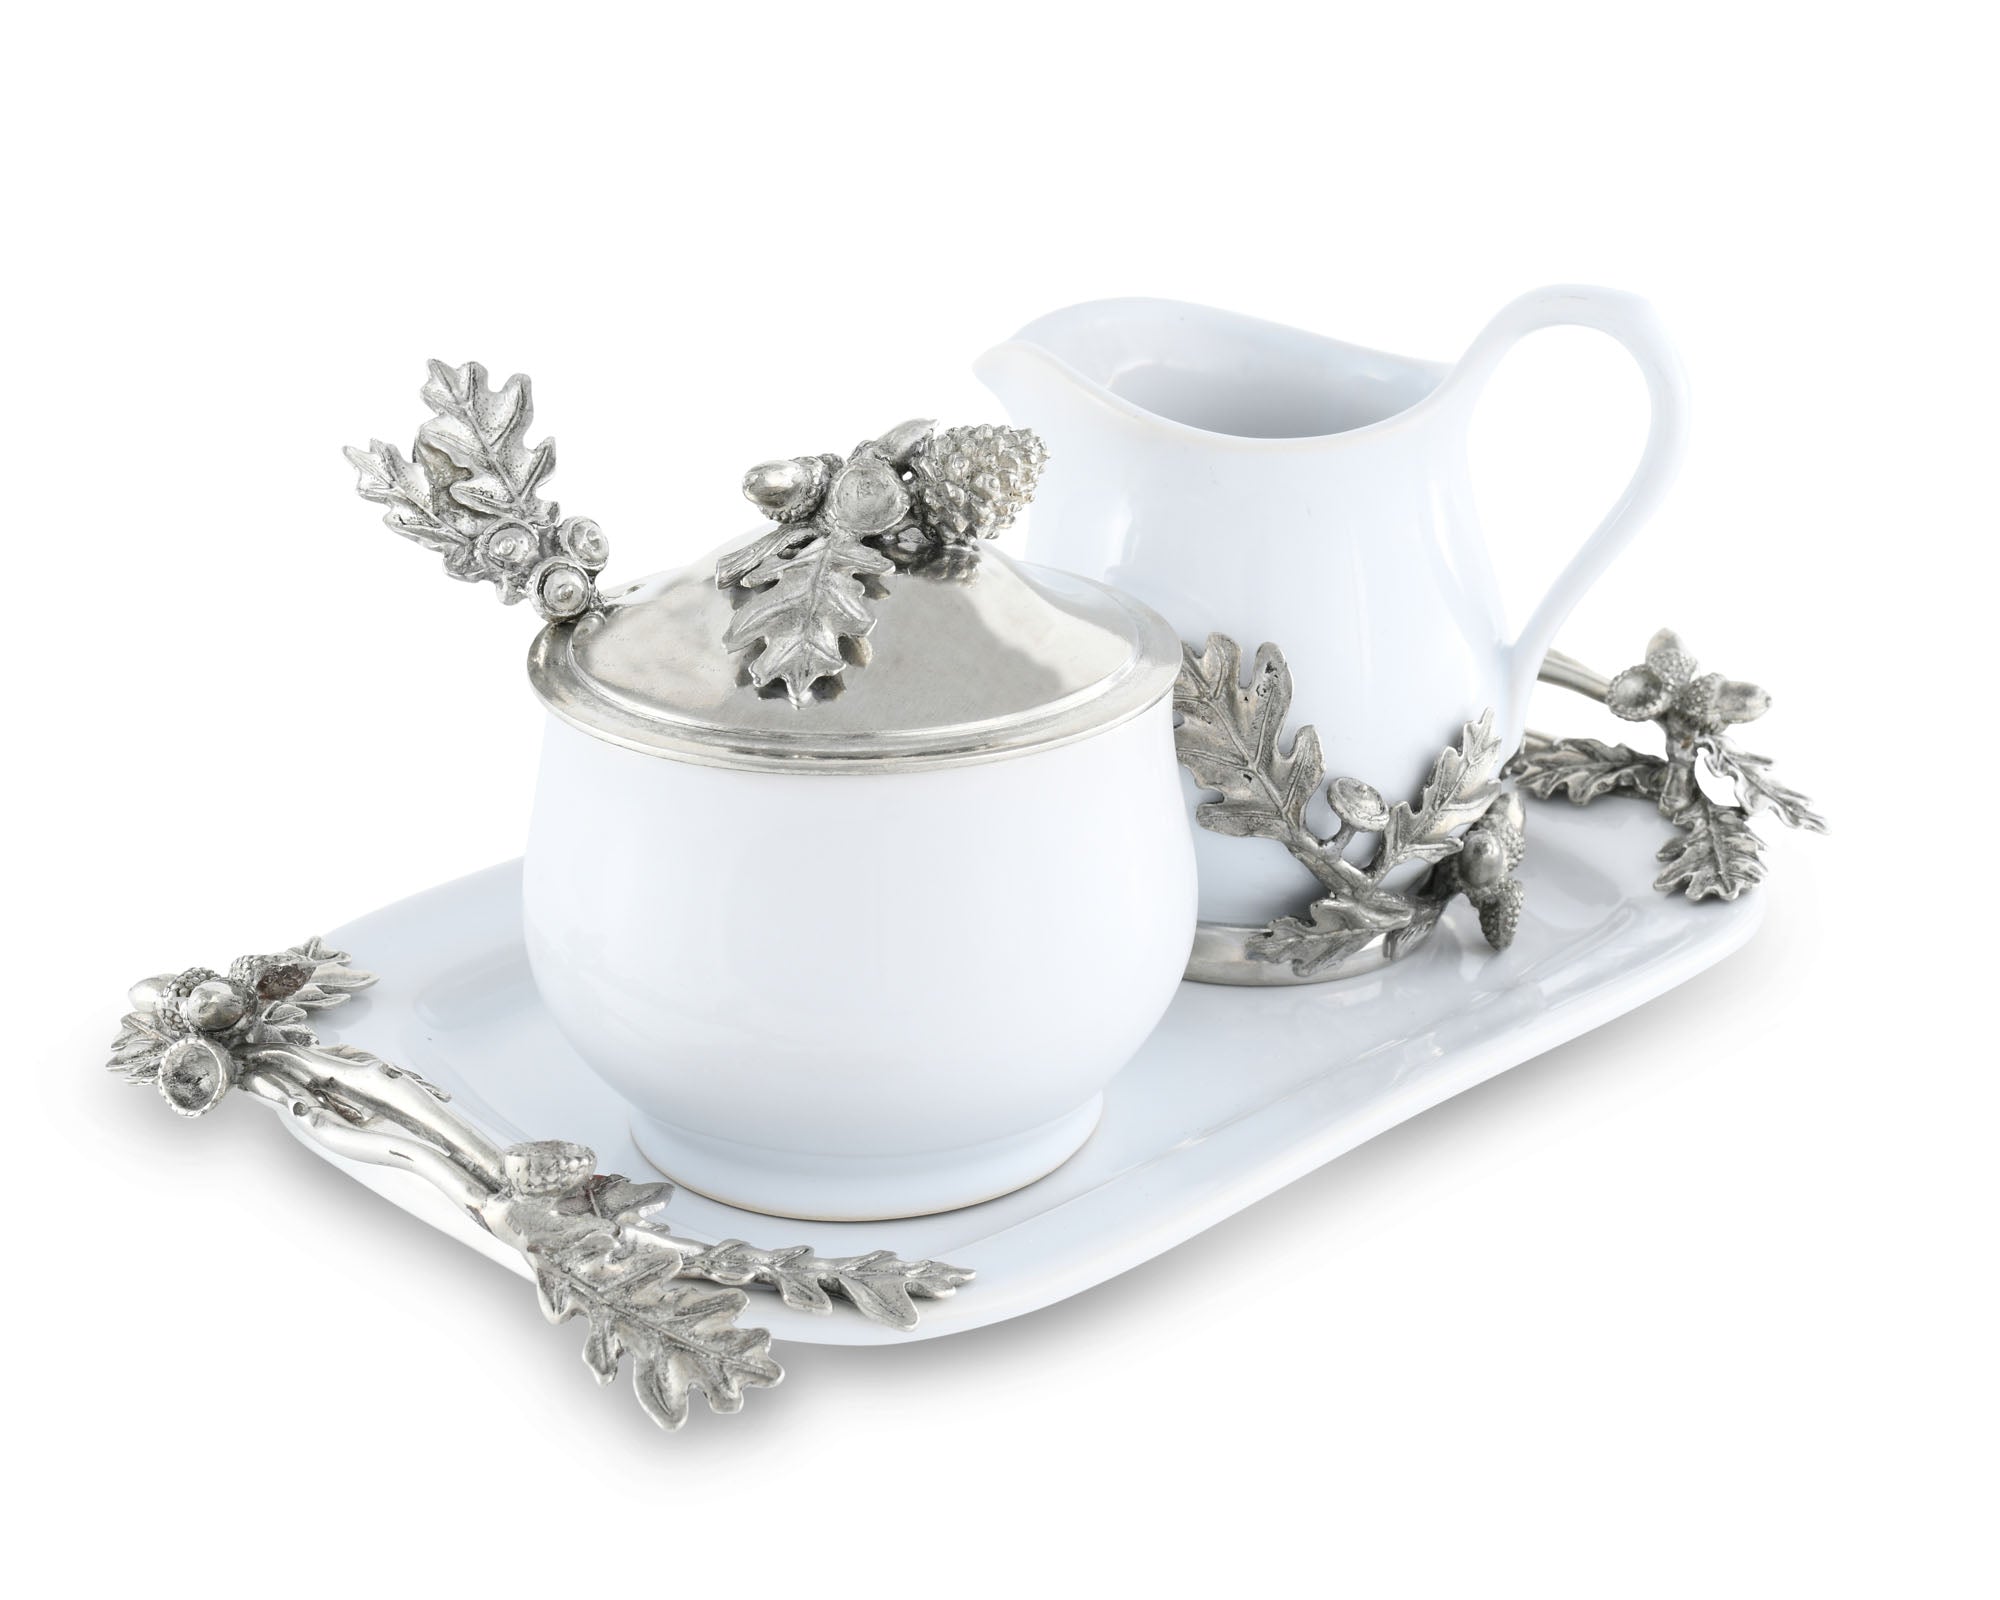 Vagabond House Stoneware Creamer Set - Pewter Acorn & Oak Leaf Product Image